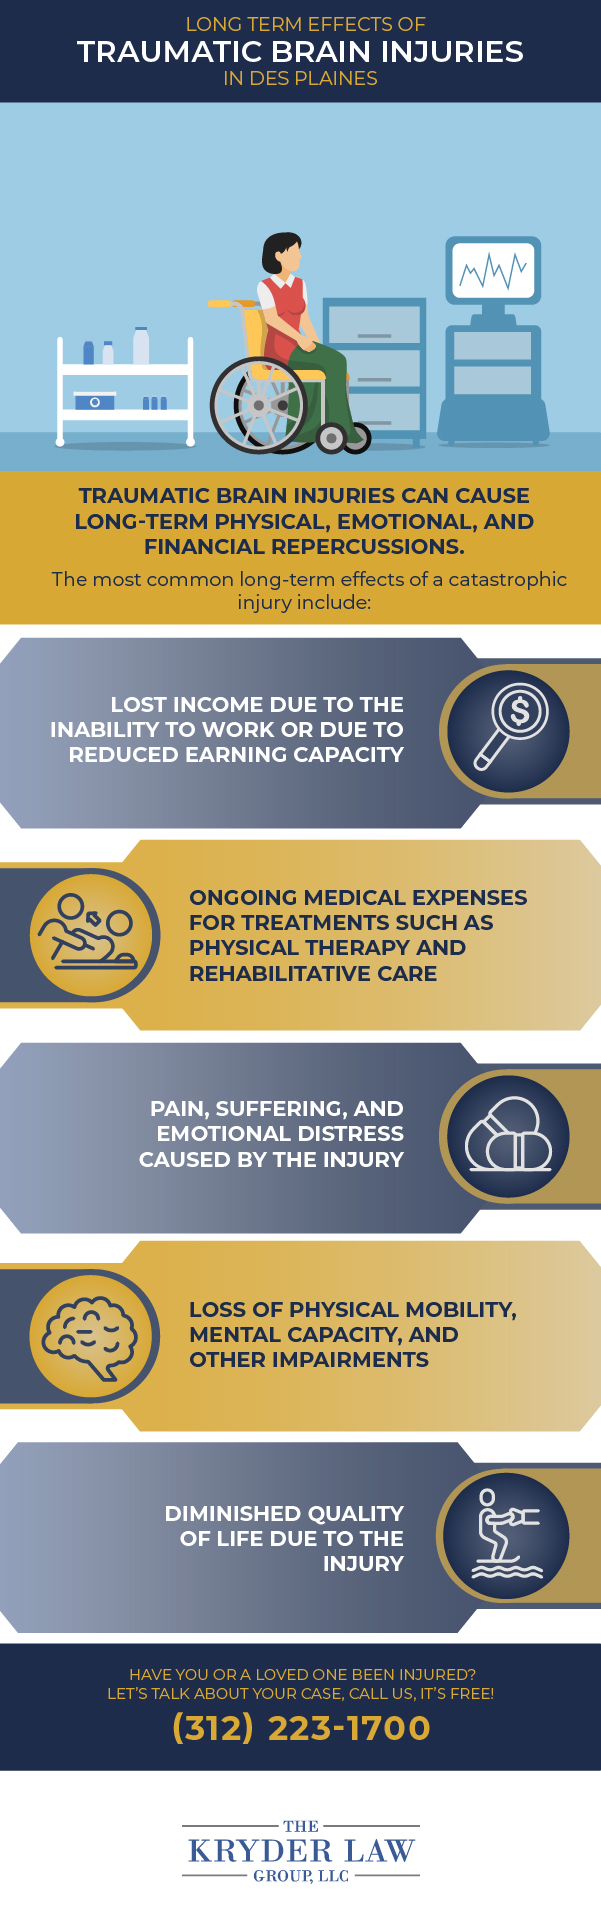 Infografía sobre los efectos a largo plazo de las lesiones cerebrales traumáticas en Des Plaines